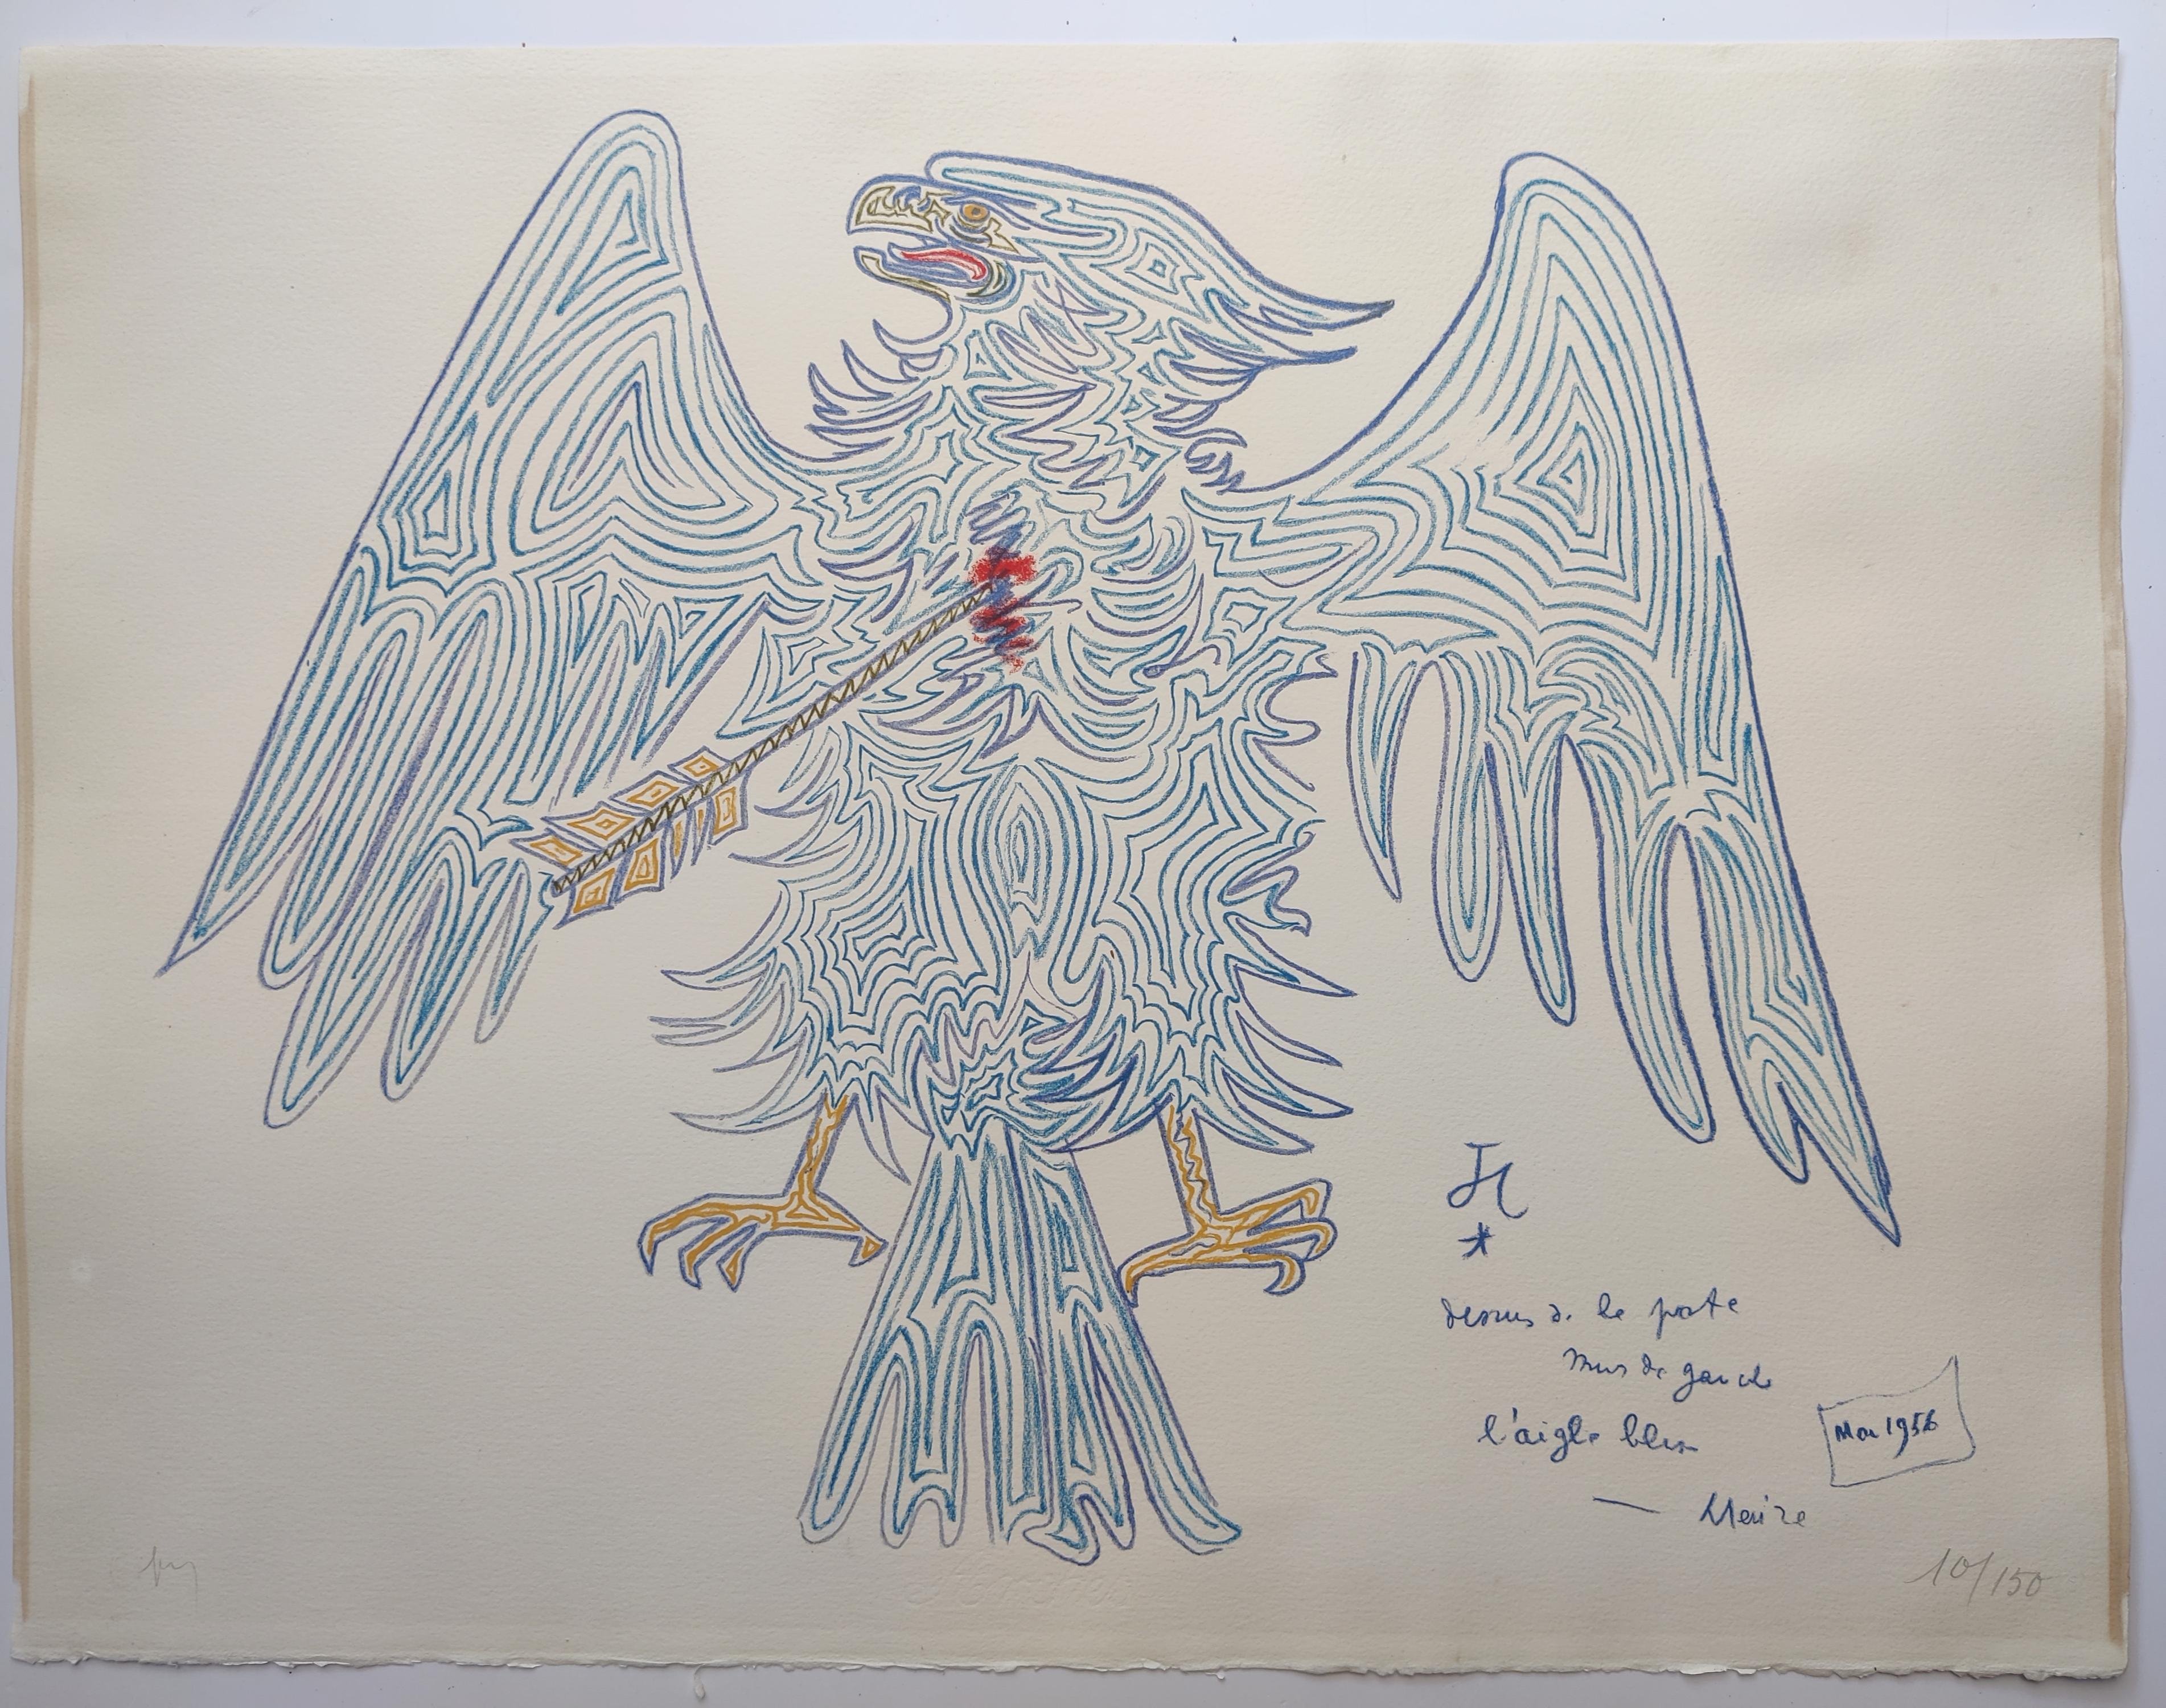 Jean Cocteau 
Blauer Adler, 1956 
Signiert unten links 
Auflage 10 / 150 unten rechts
Blattgröße: 65 x 50 cm 
Ungerahmt